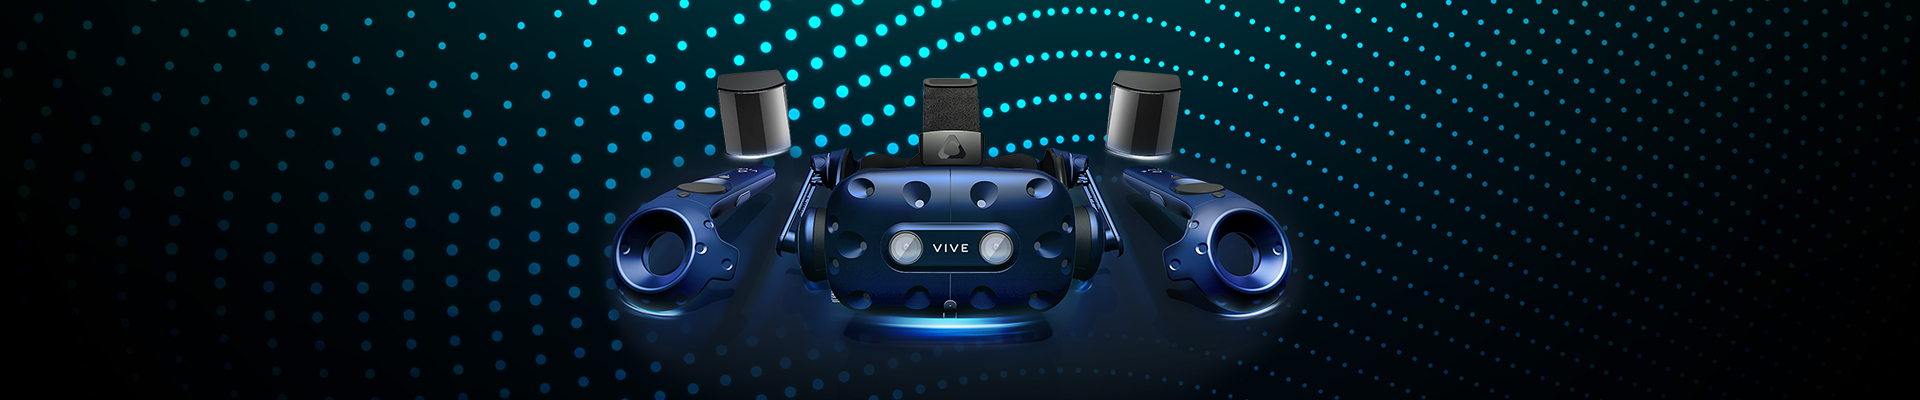 Снижение цен на системы виртуальной реальности VIVE PRO